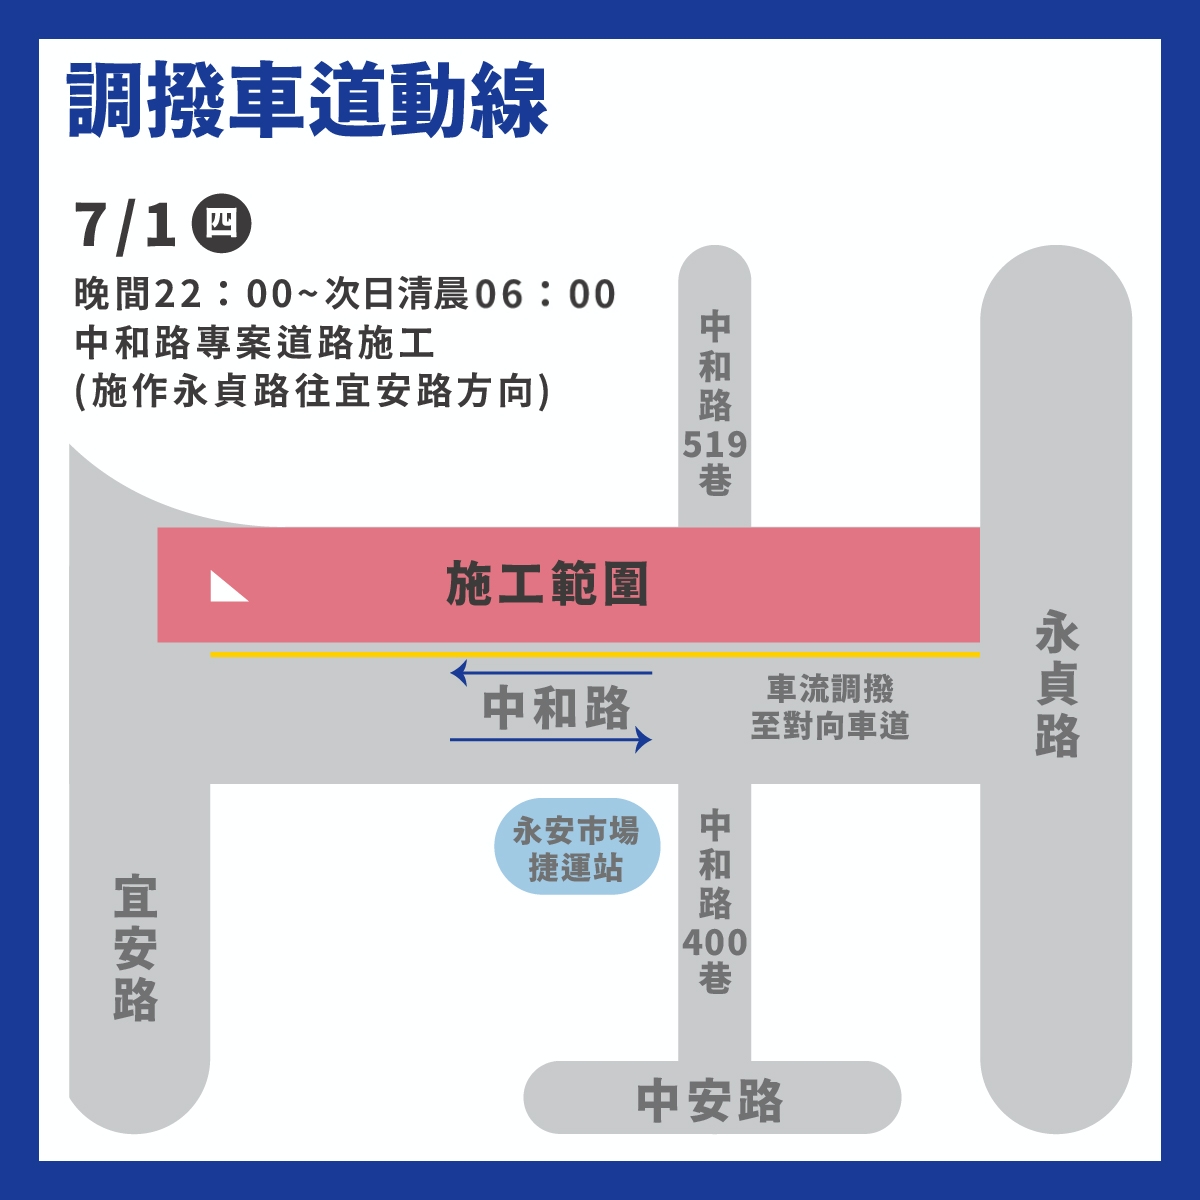 7月1日晚上10時至隔日上午6時將封閉永貞路往宜安路方向，以對向調撥方式協助用路人通行。